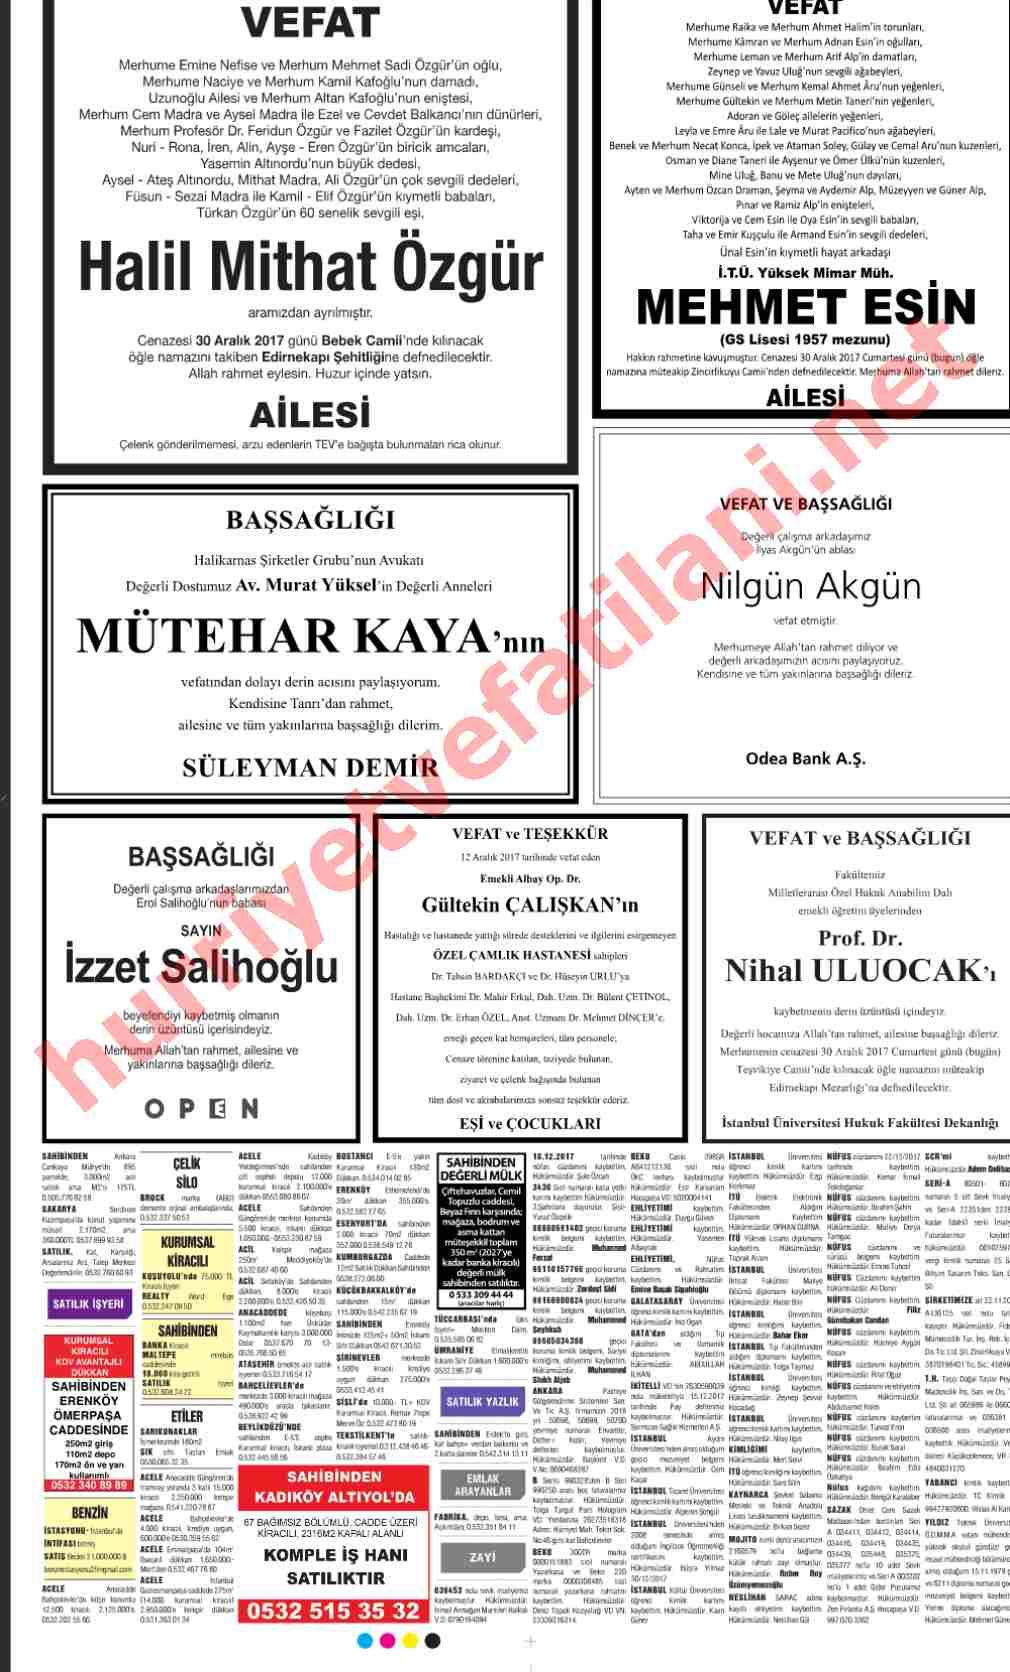 30 Aralık 2017 Hürriyet Gazetesinde Yayınlanmış Vefat İlanları Sayfası